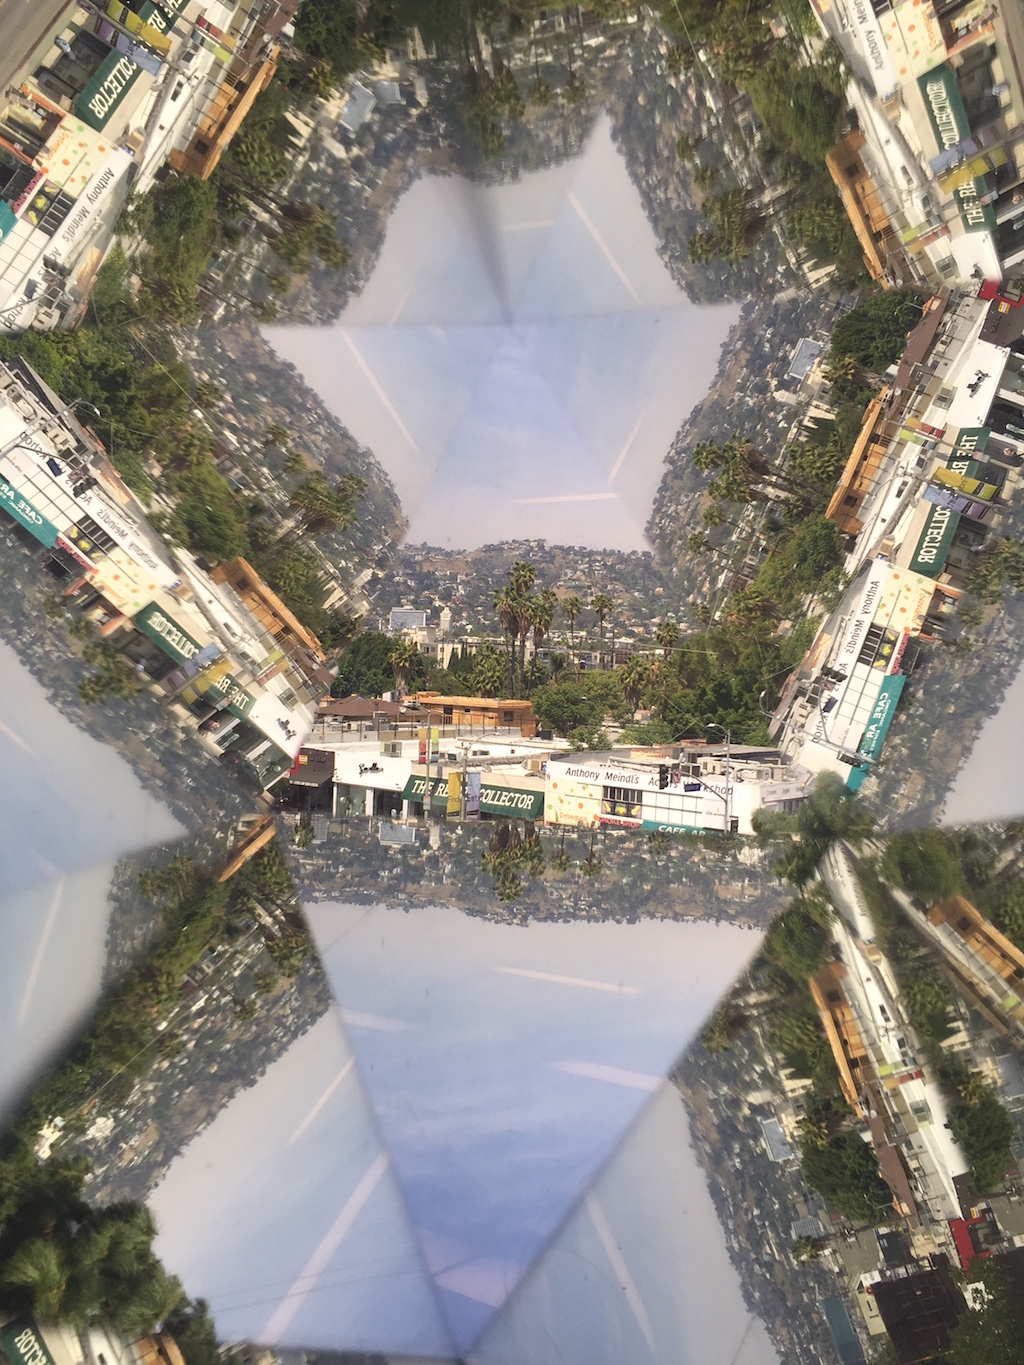 Fairfax High School student kaleidoscope project